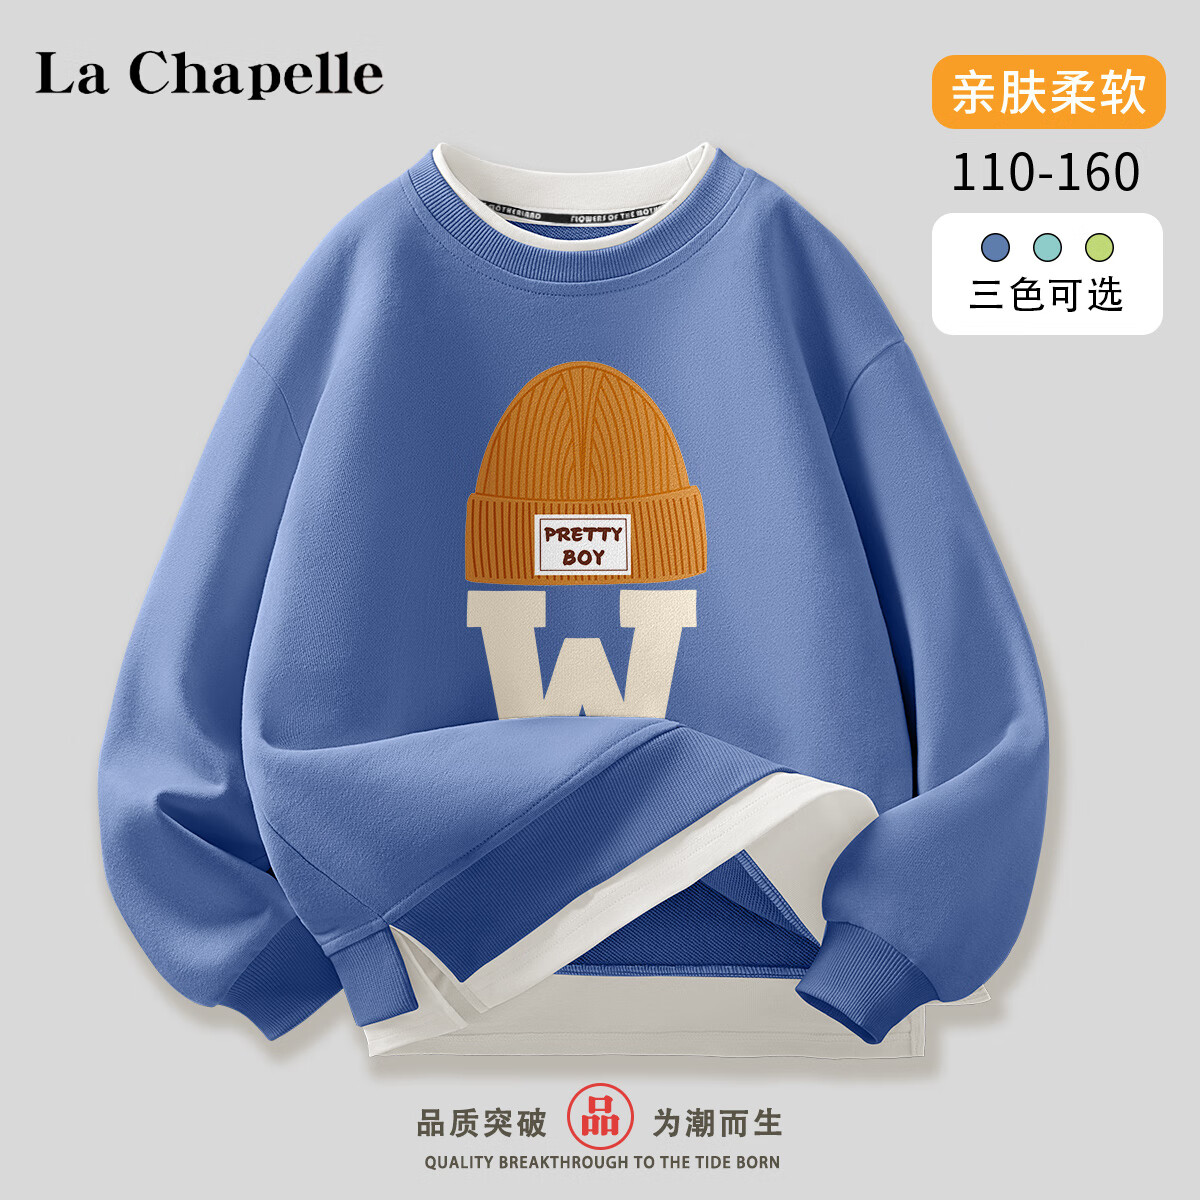 La Chapelle 儿童卫衣 假两件打底衫